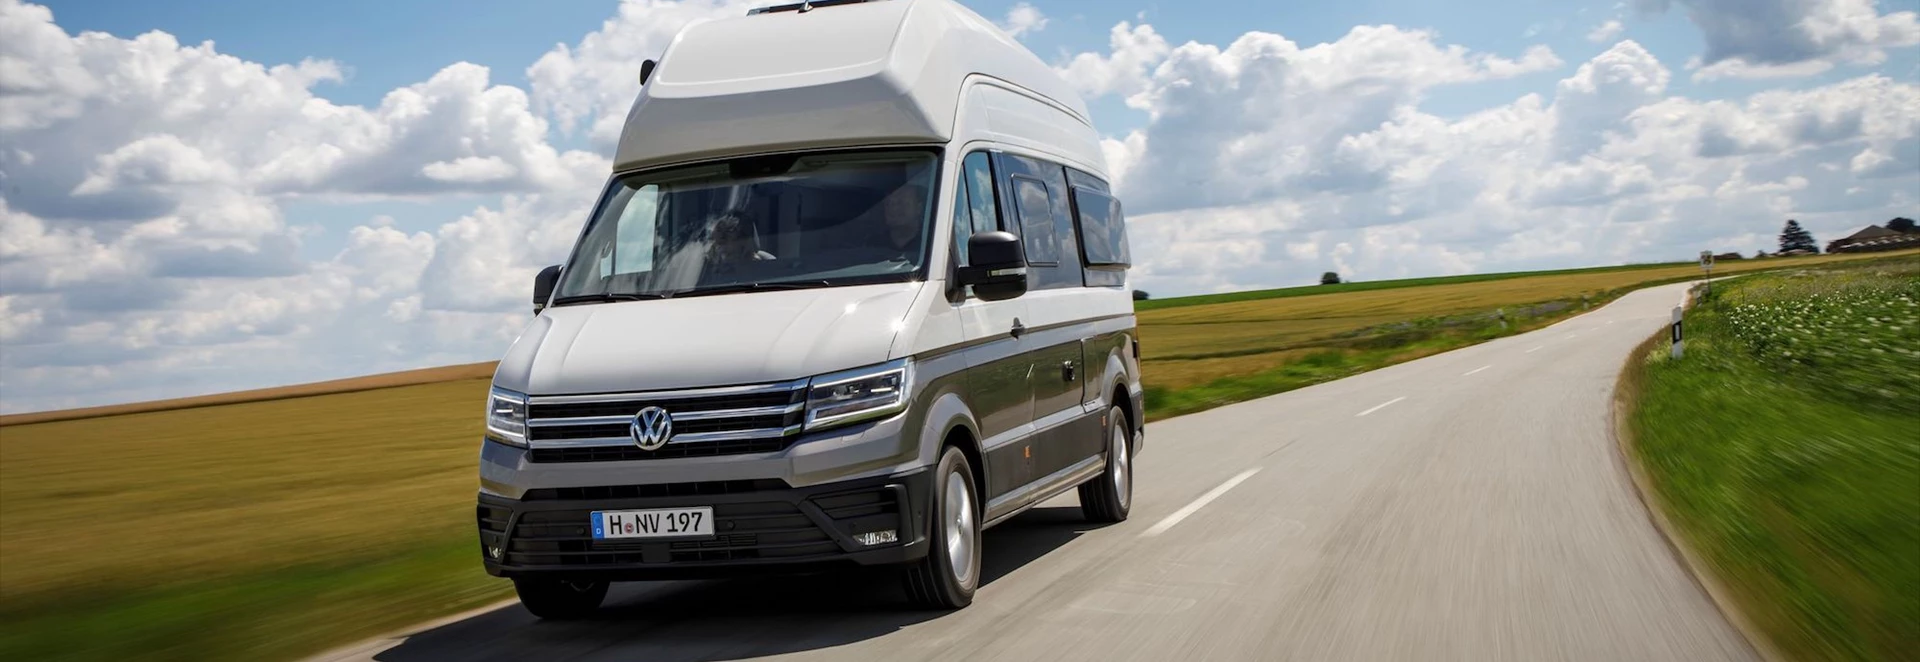 Volkswagen reveals largest campervan yet – the Grand California